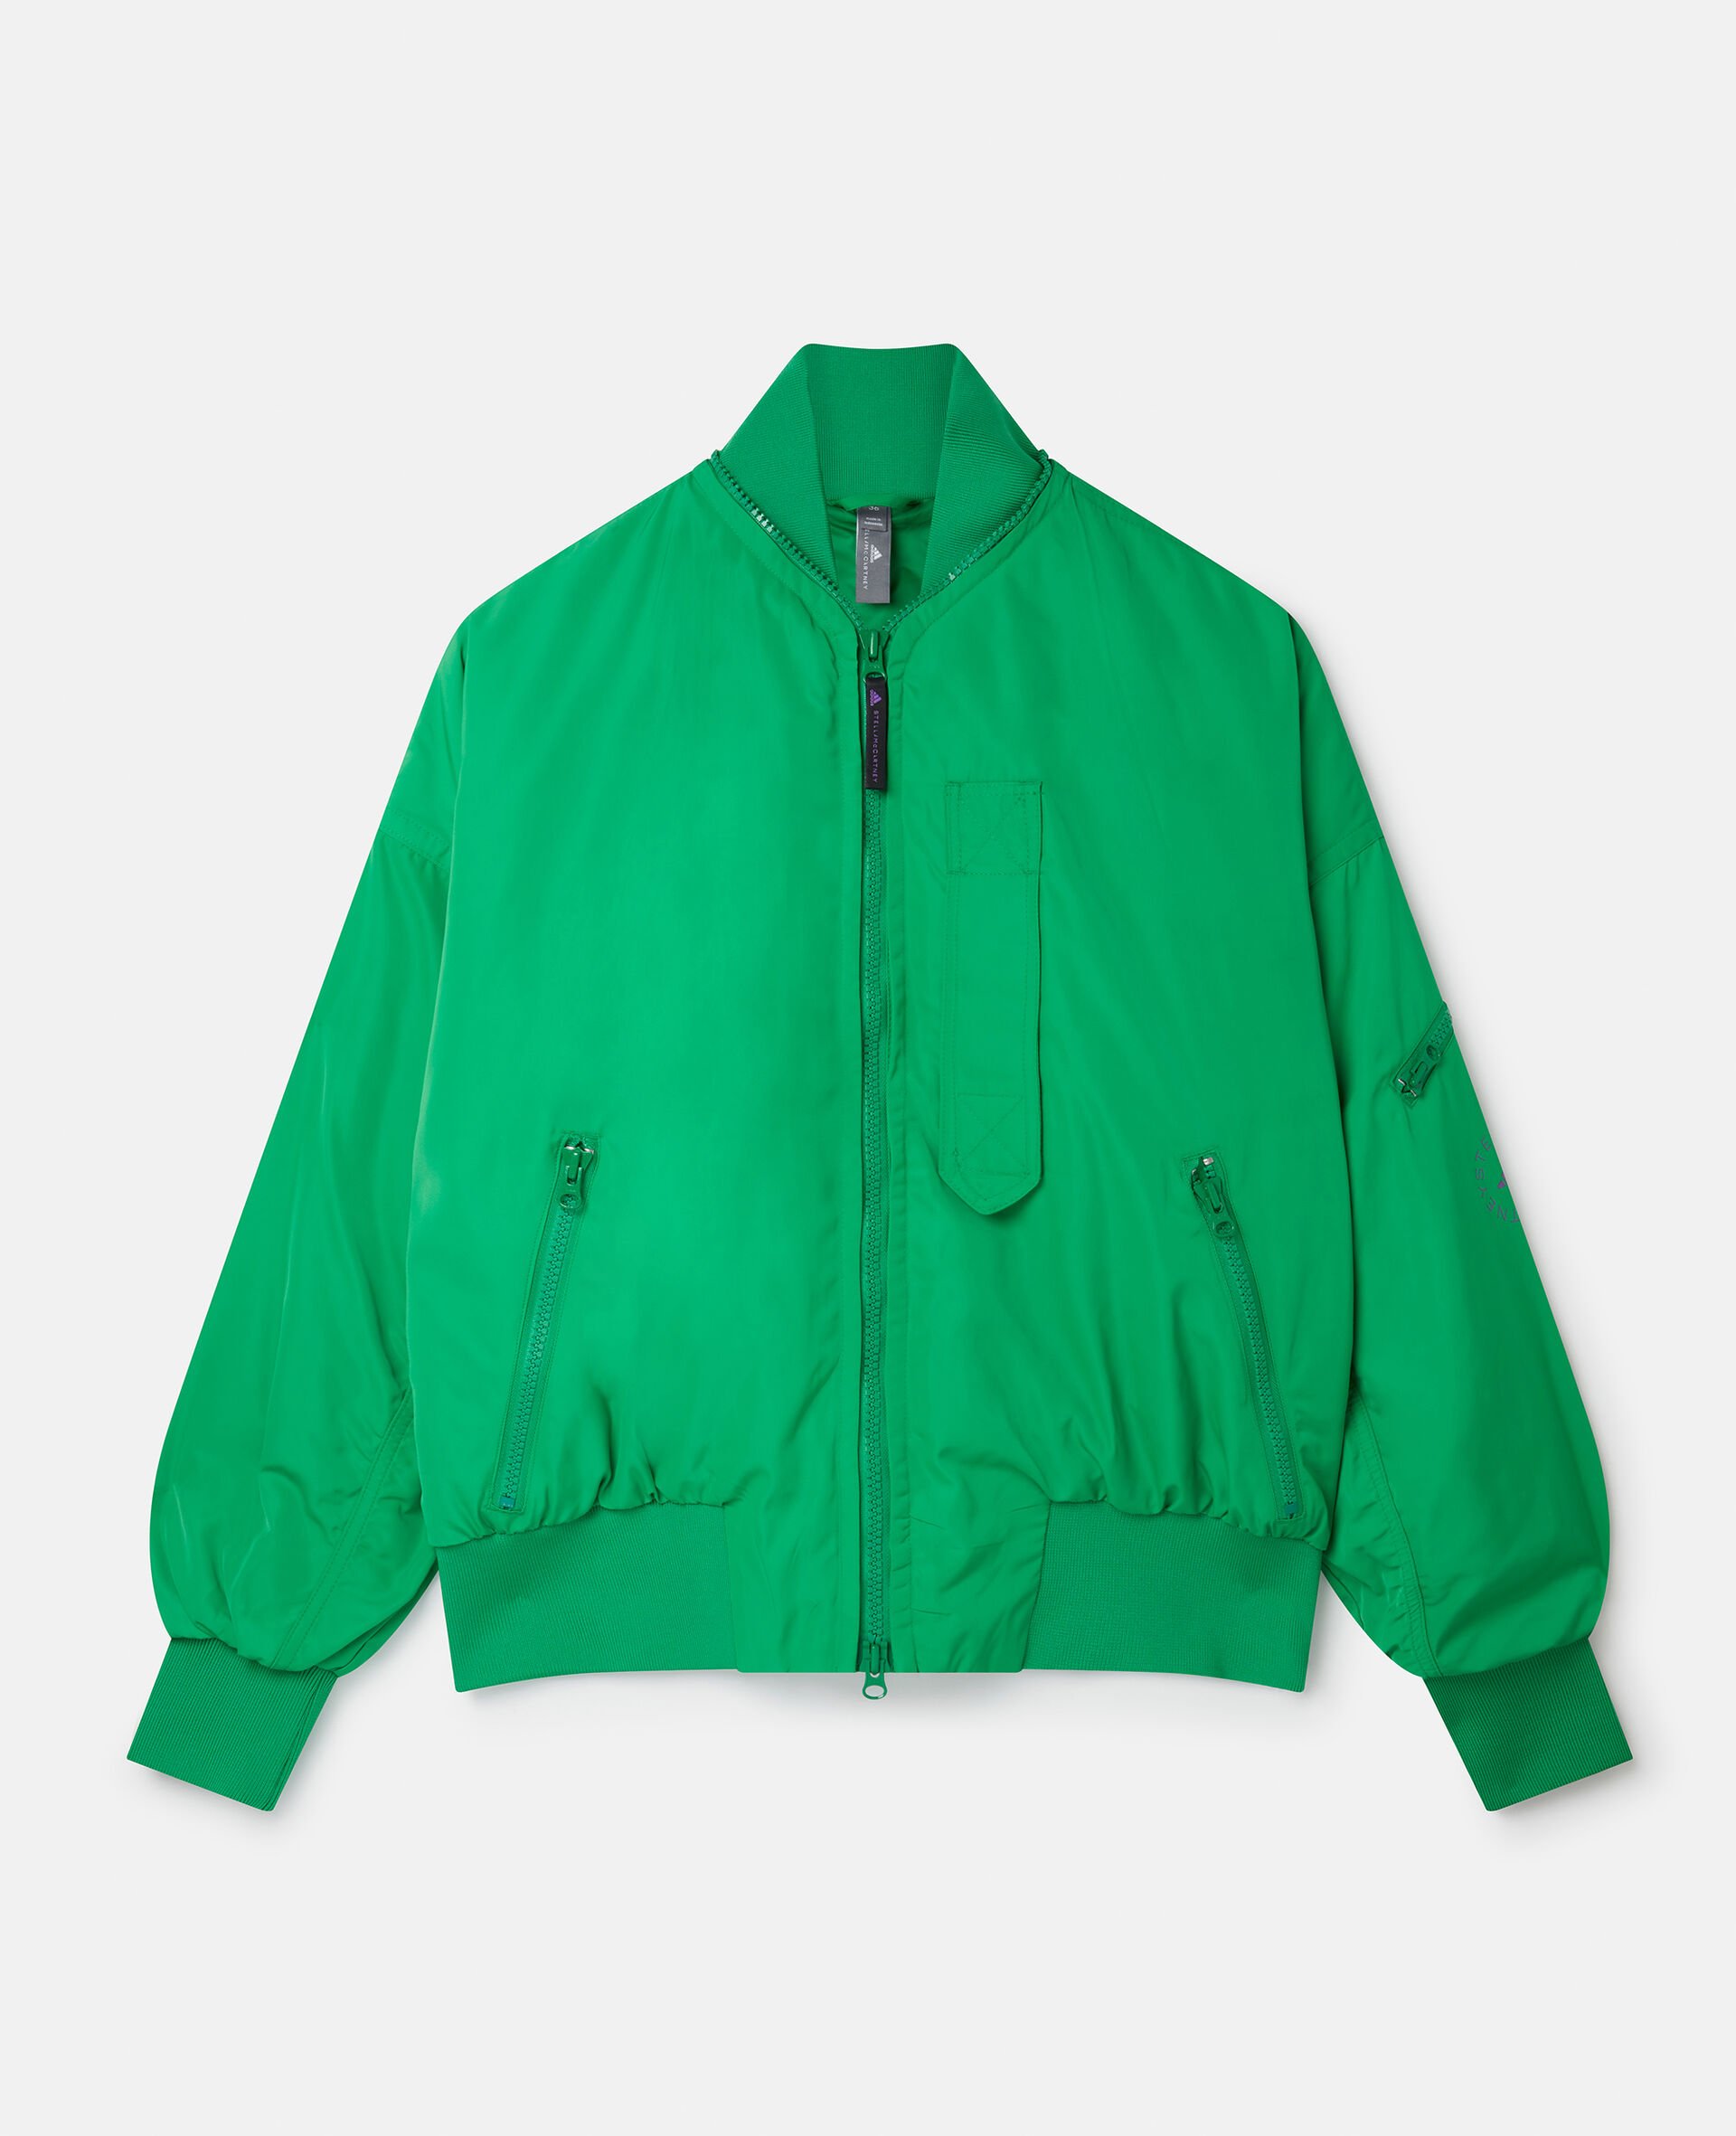 Woven Sportswear Bomber-Green-large